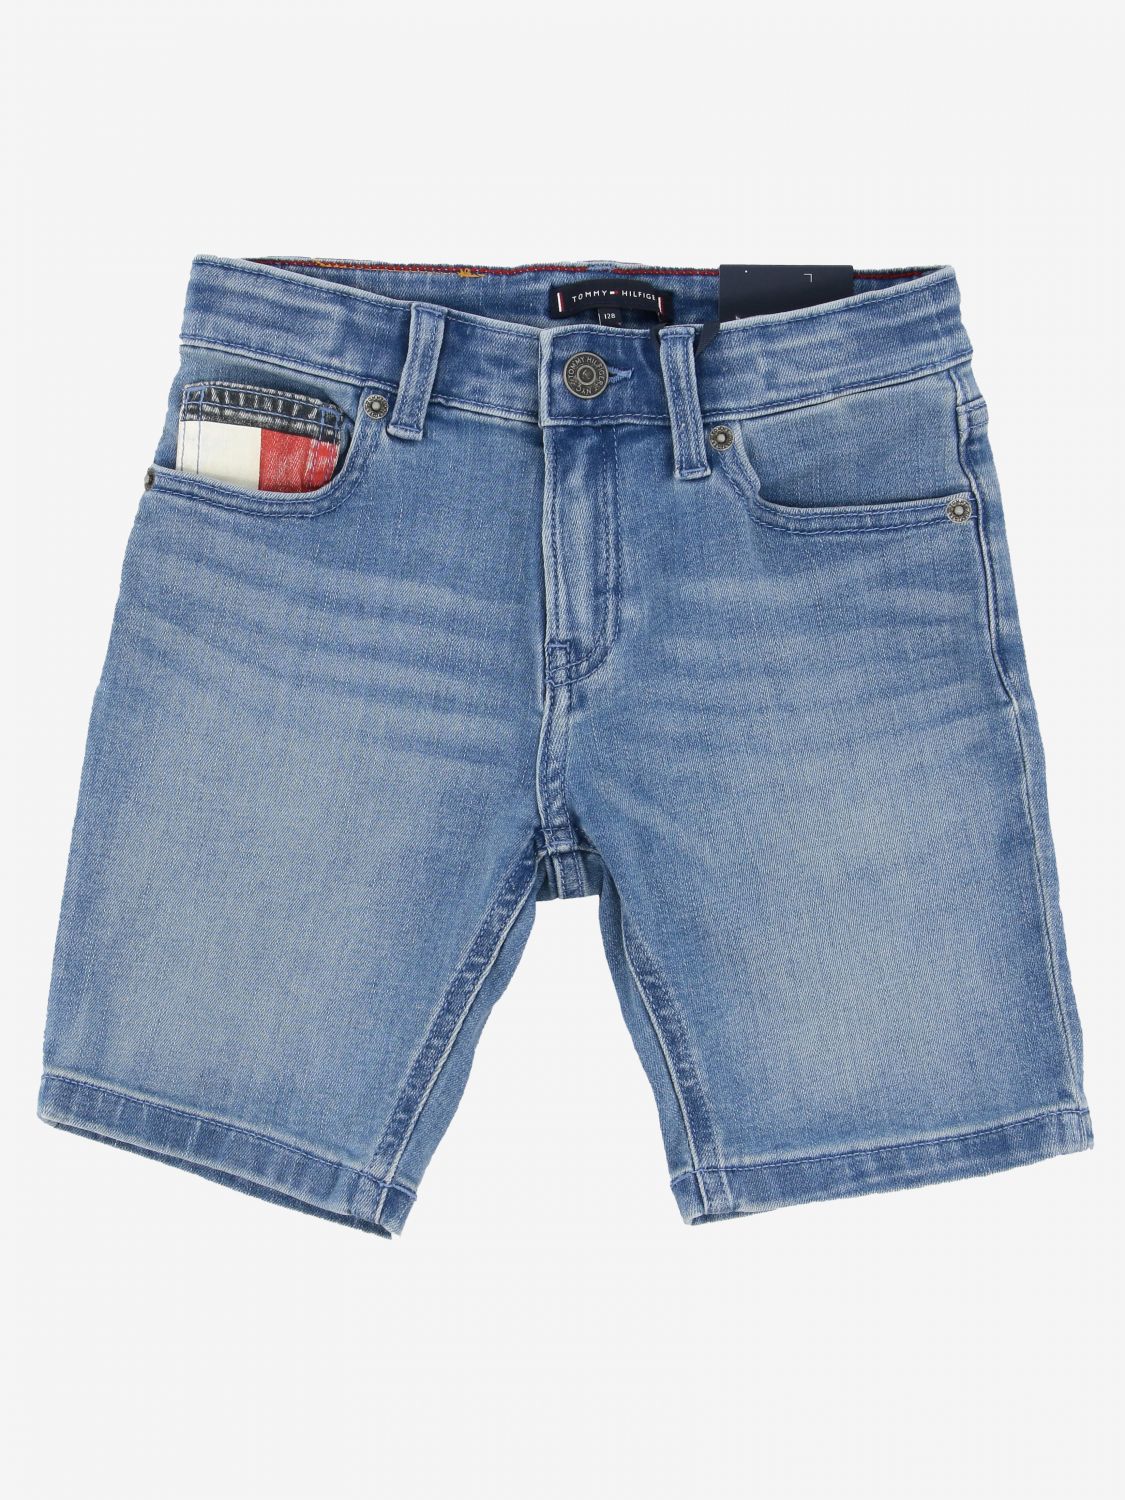 Tommy Hilfiger Outlet: denim shorts used denim with logo Gnawed Blue | Tommy Hilfiger shorts KB0KB05757 online on